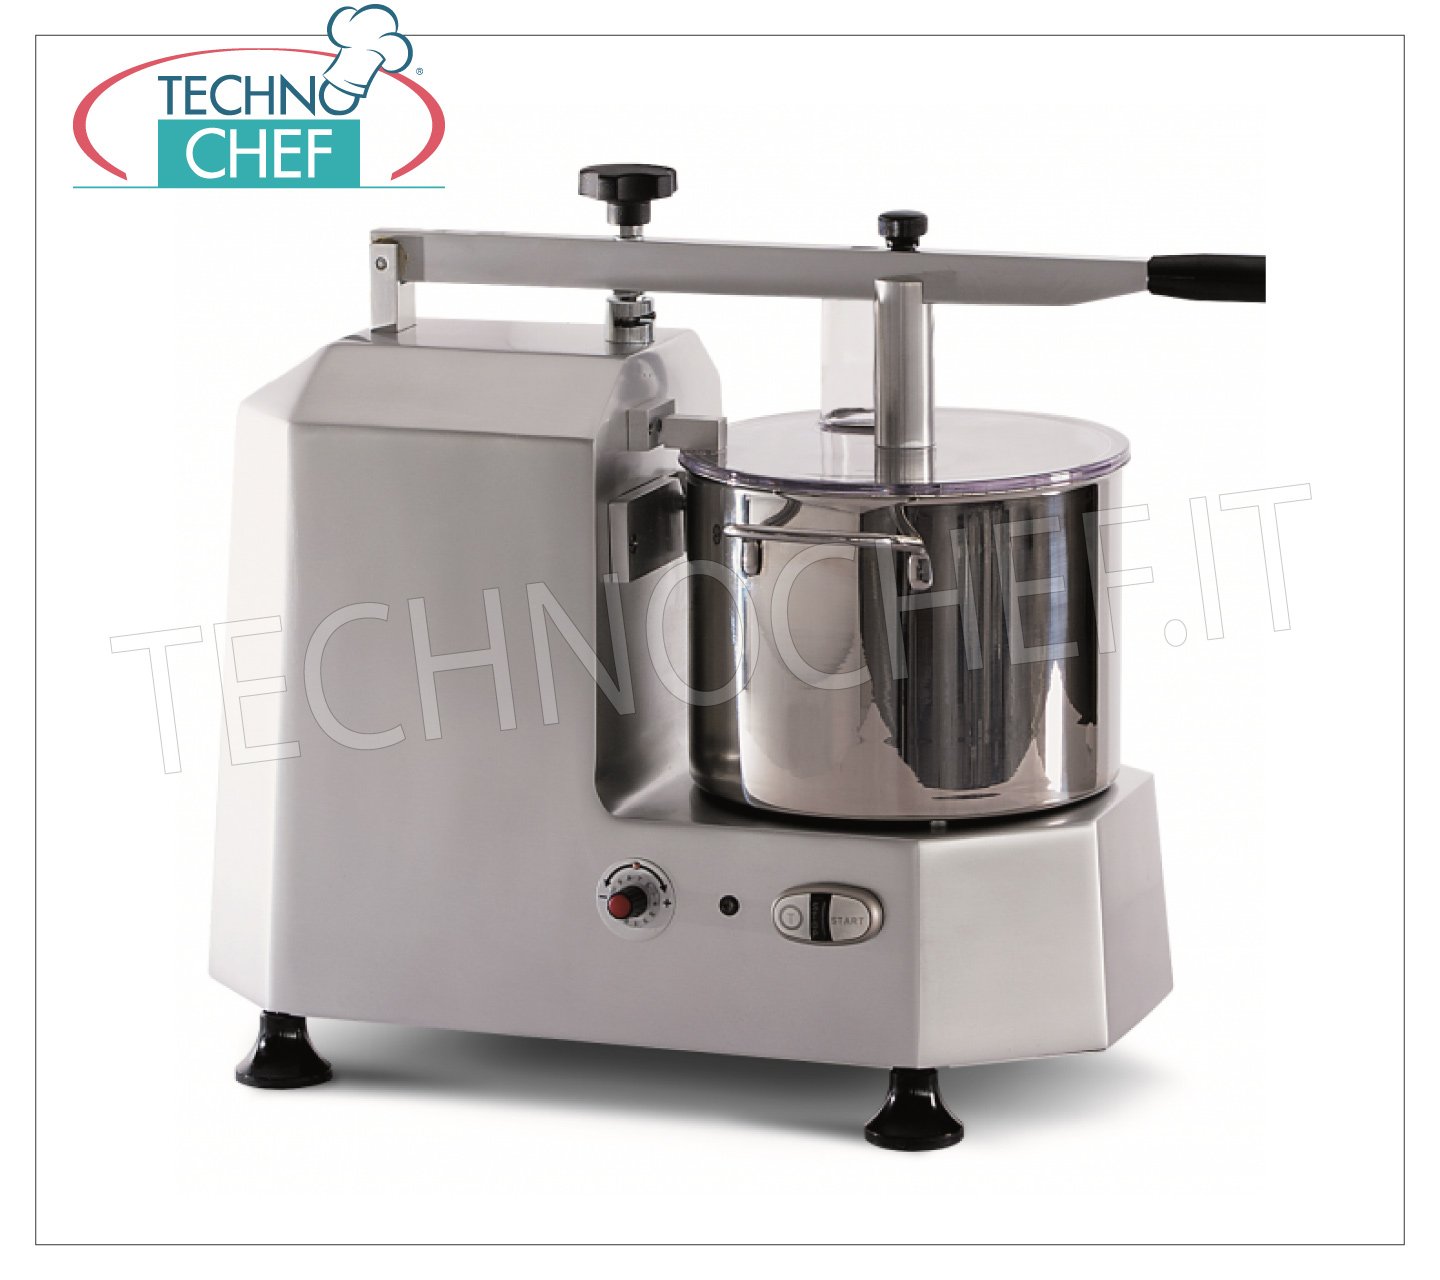 TECHNOCHEF - Cutter Professionale con vasca da lt 5, Mod.C2, Cutter,  mixer, tagliaverdure, tagliamozzarella